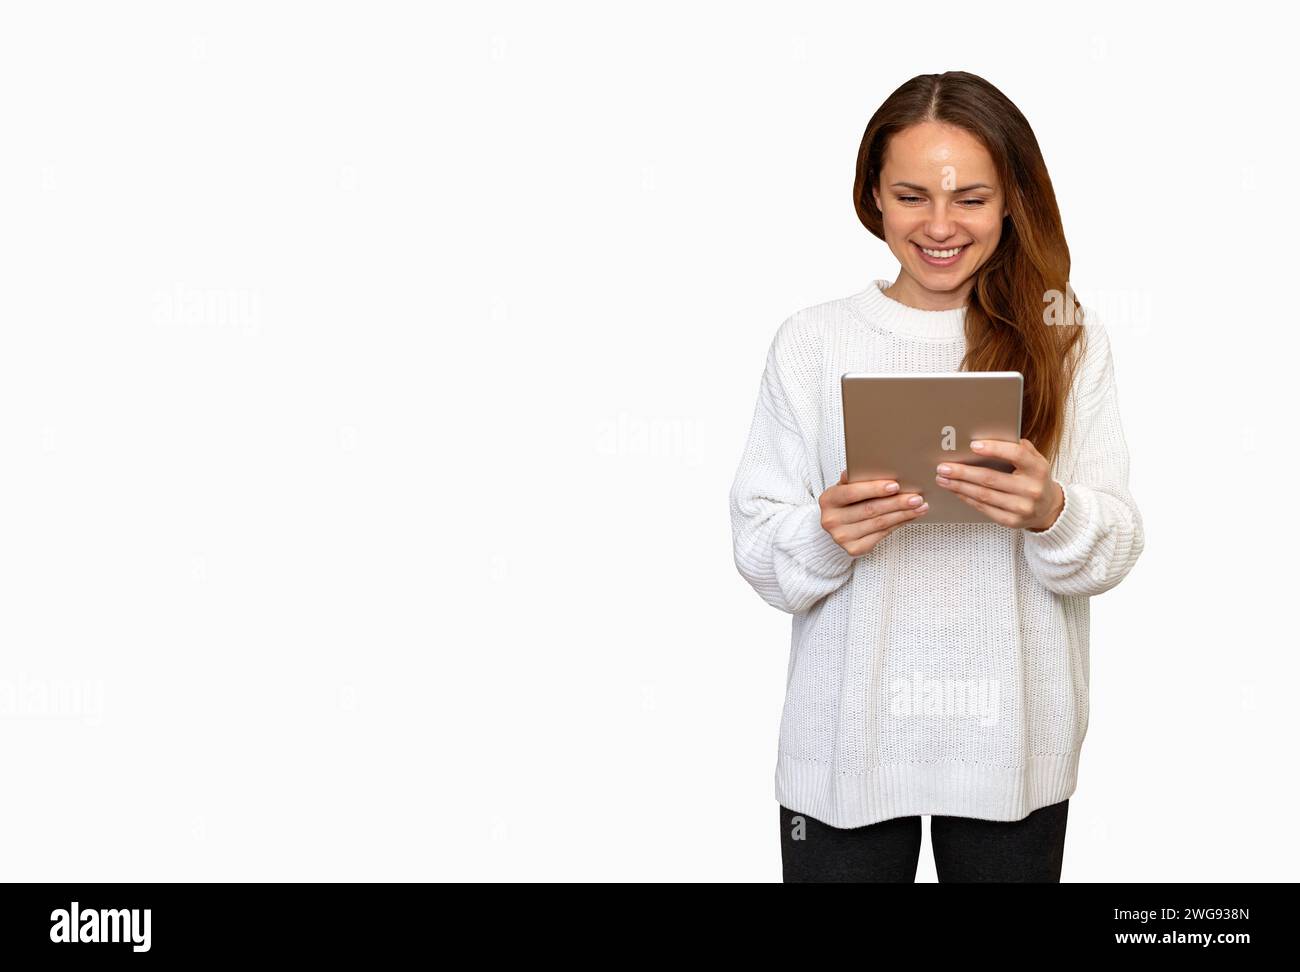 Isolée jeune femme brune avec les cheveux longs portant un pull blanc à l'aide d'une tablette numérique et souriant. Banque D'Images